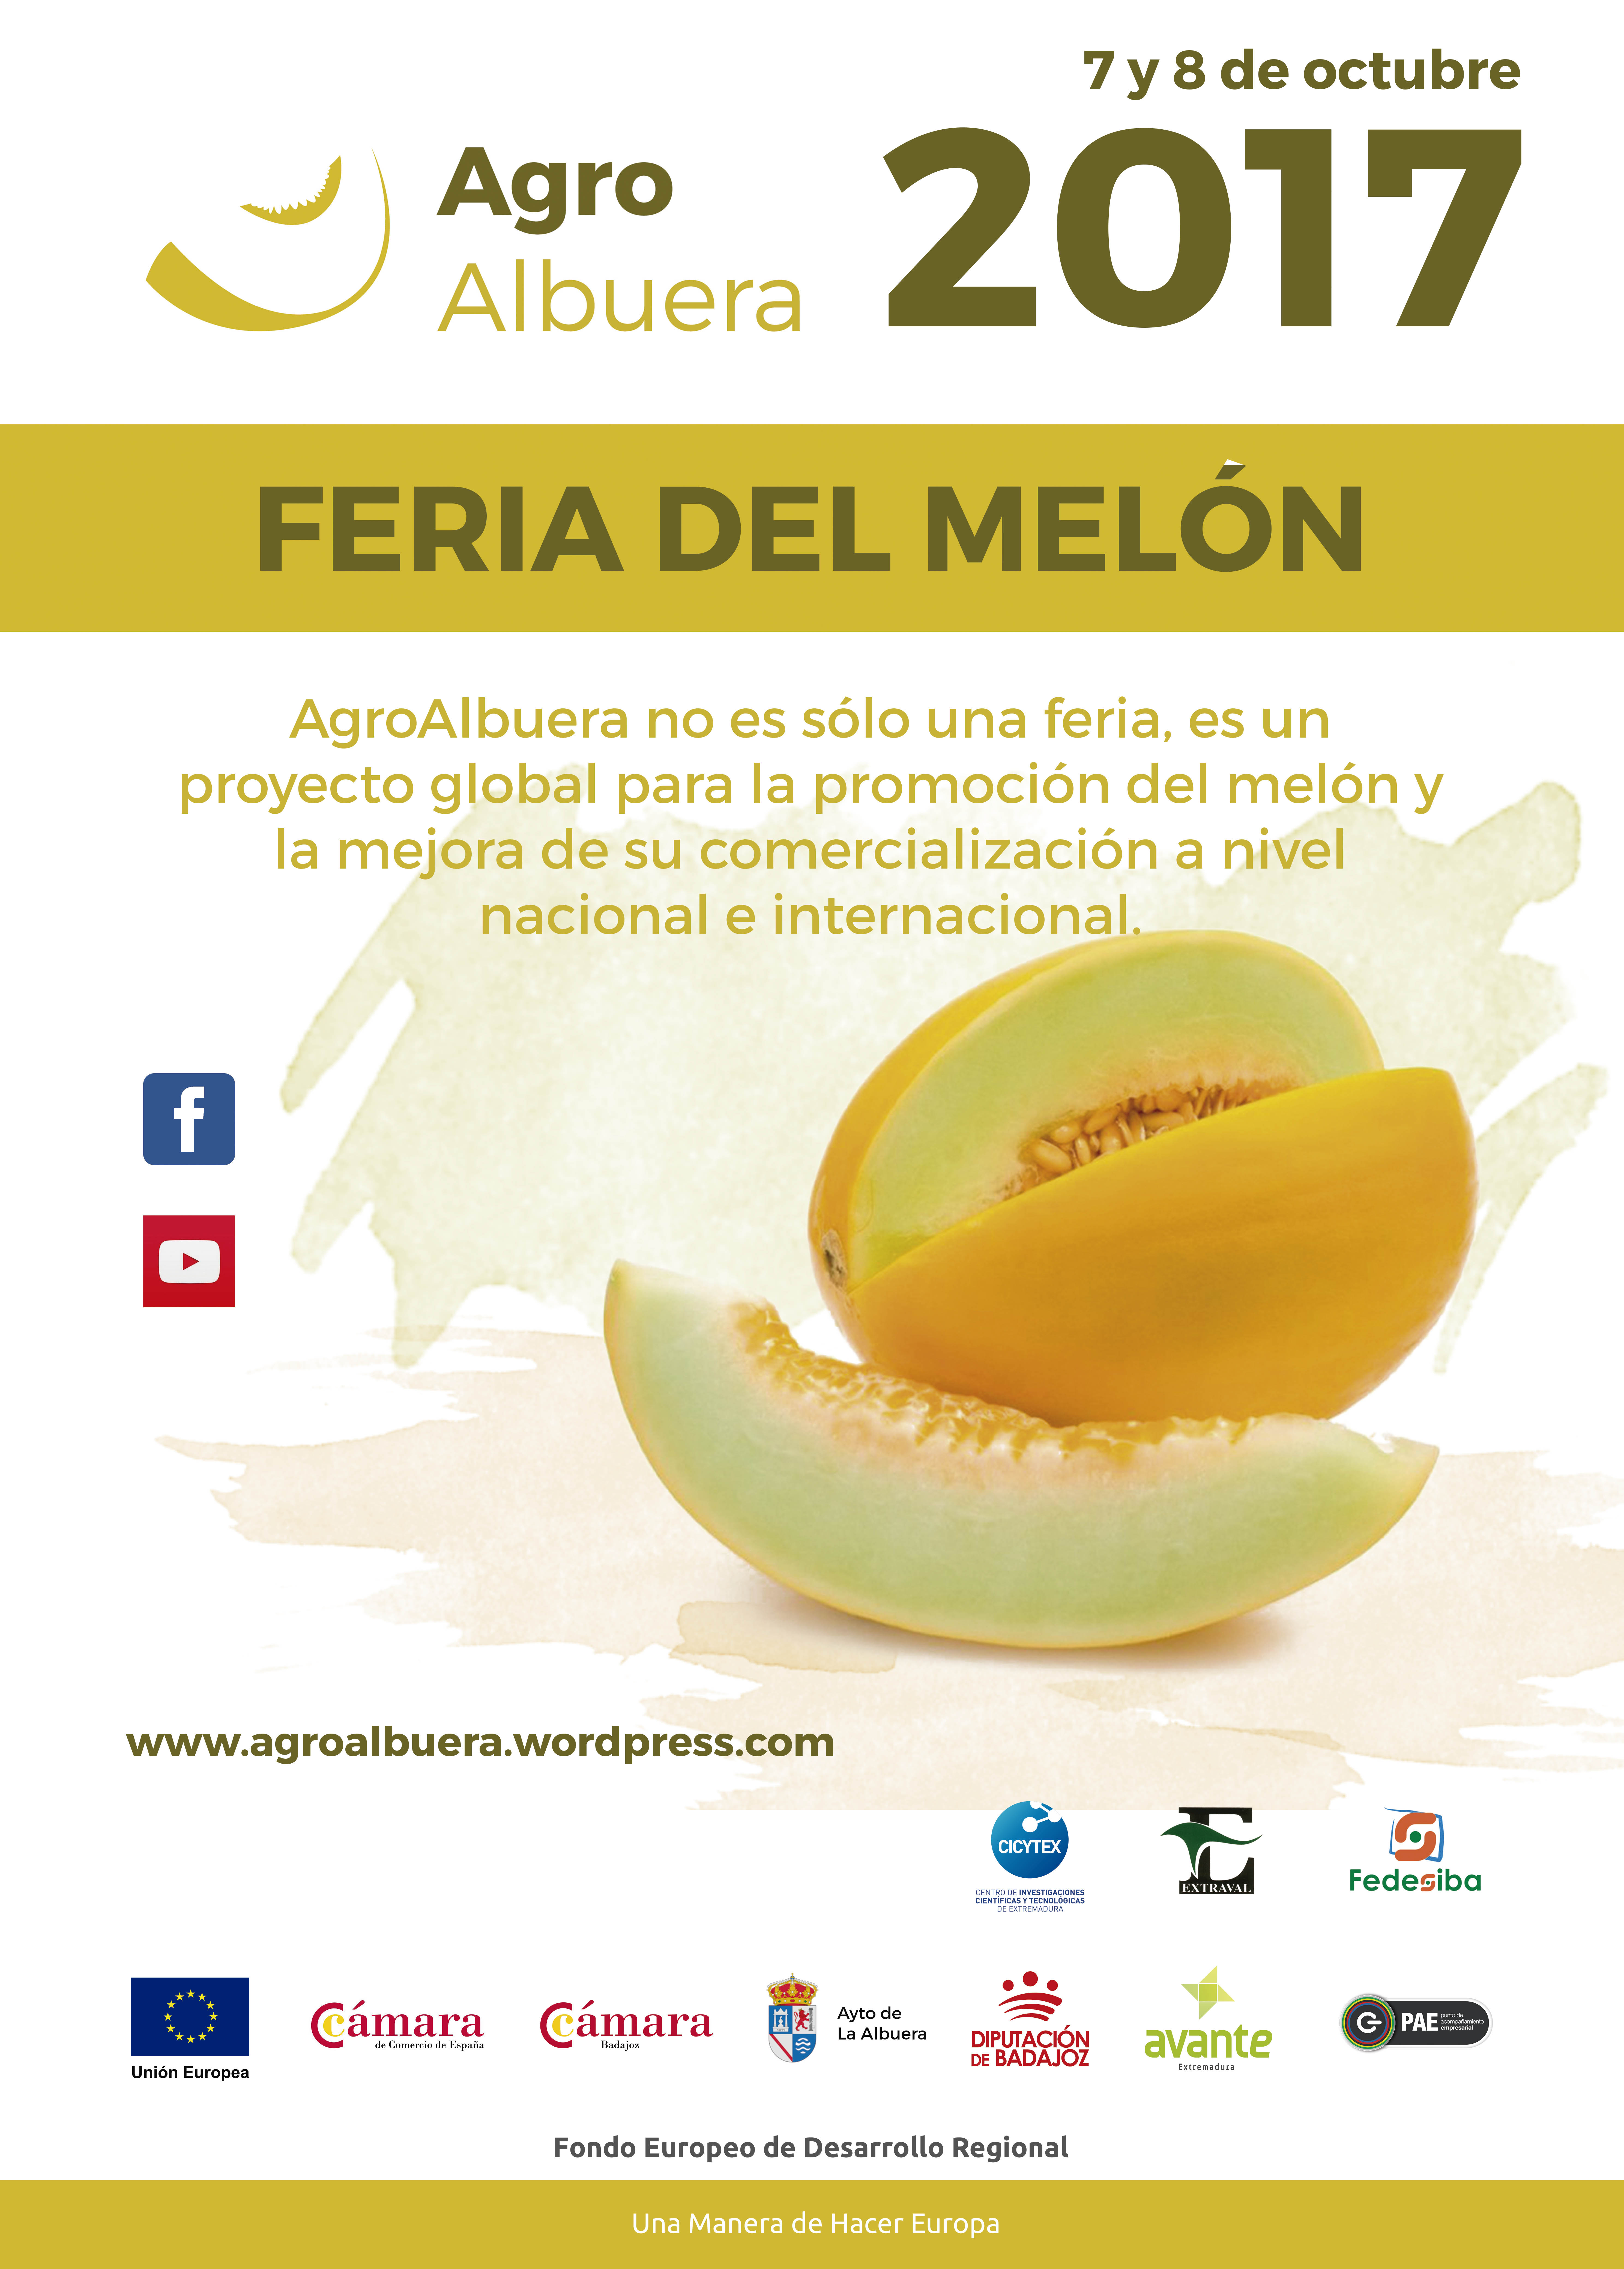 Feria del melon agroalbuera 2017 54